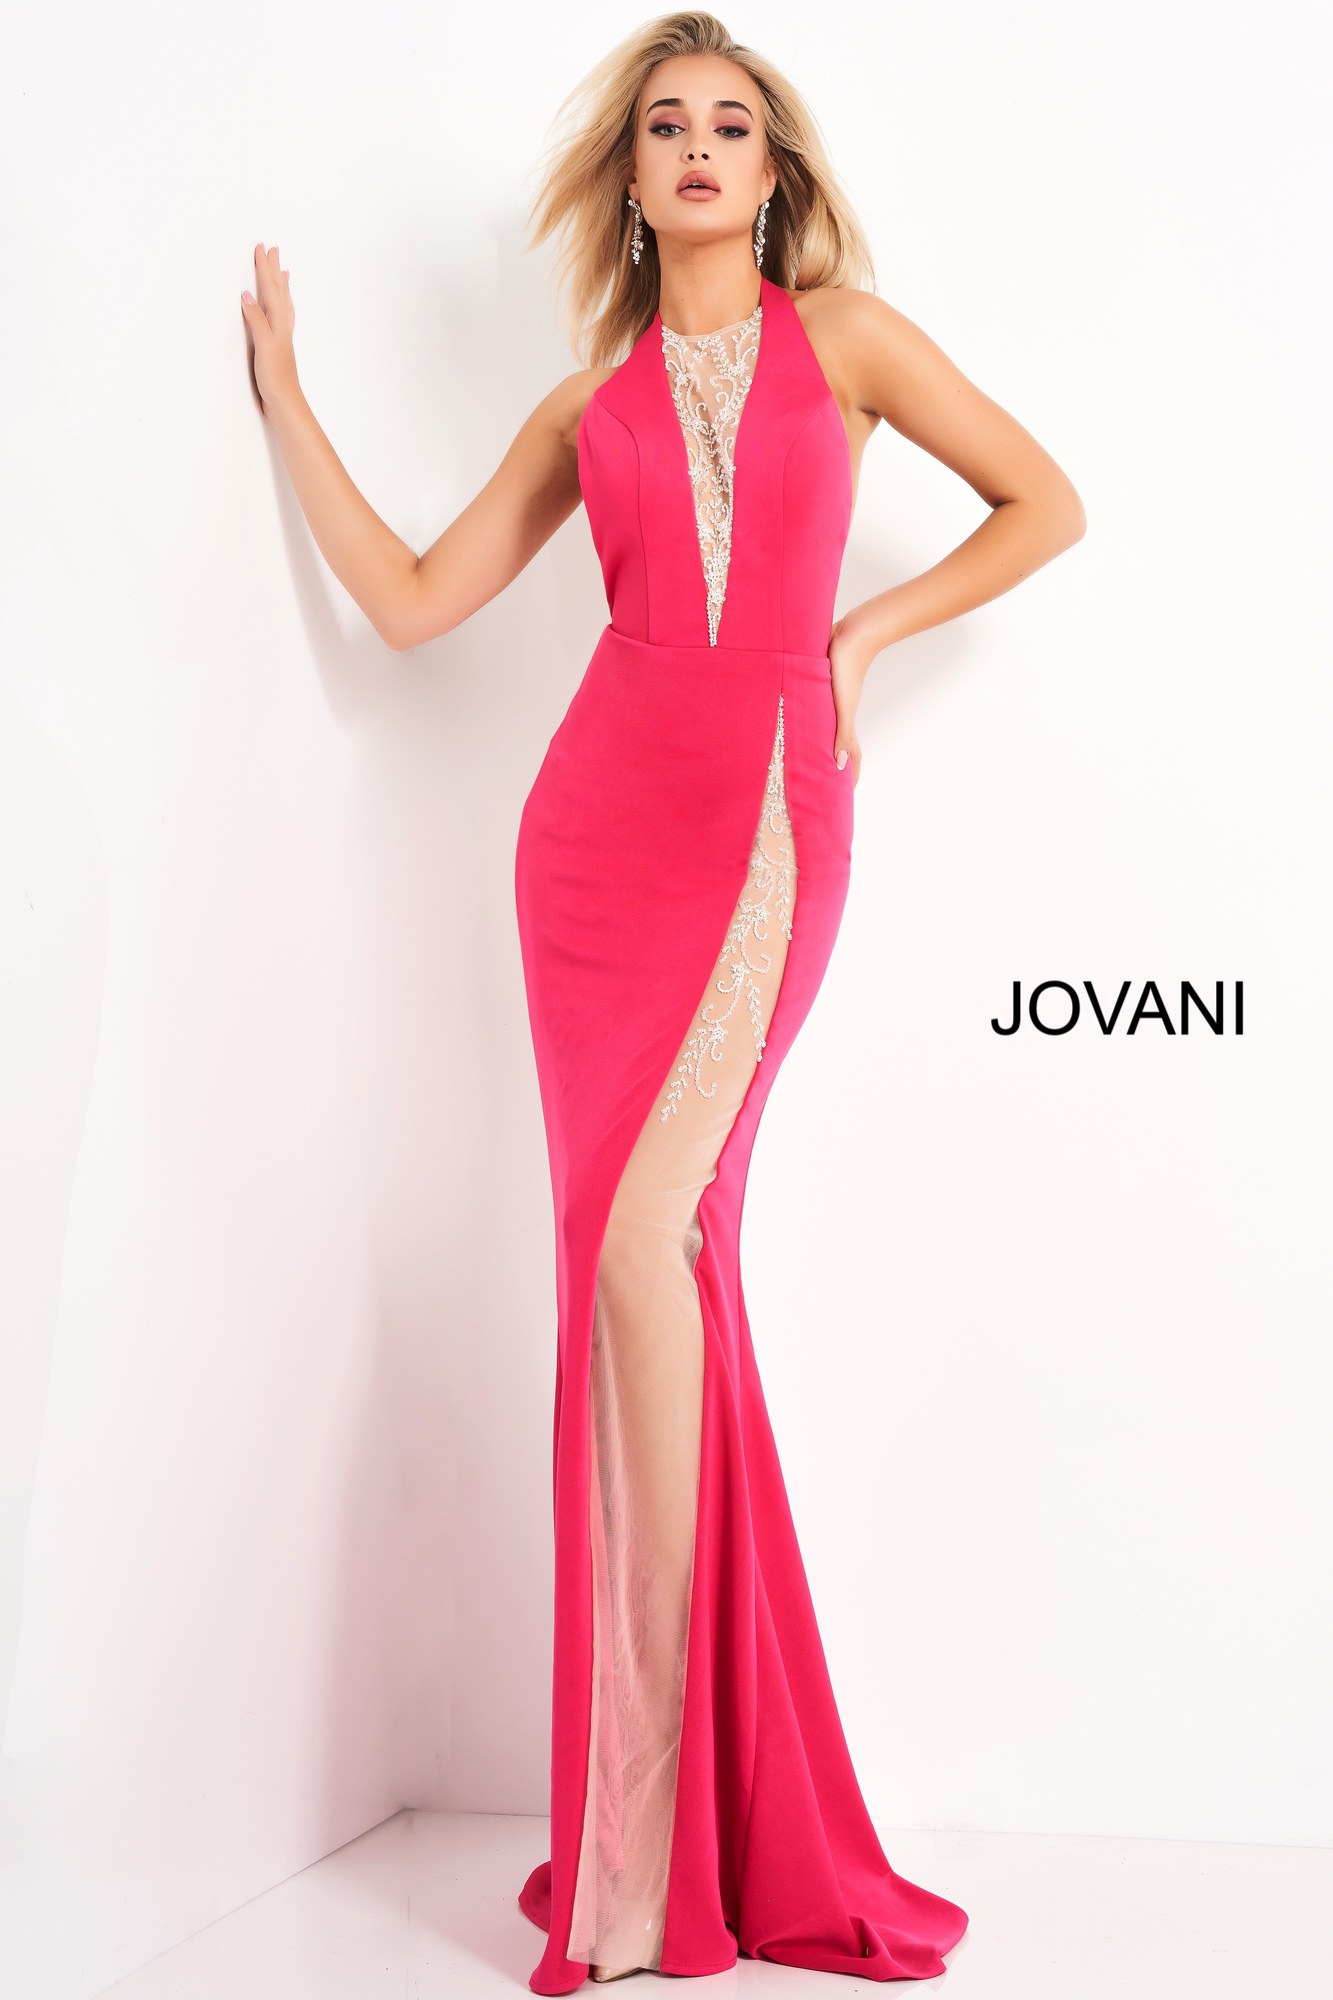 Jovani 02086 | Hot Pink Halter Neck Backless Prom Dress